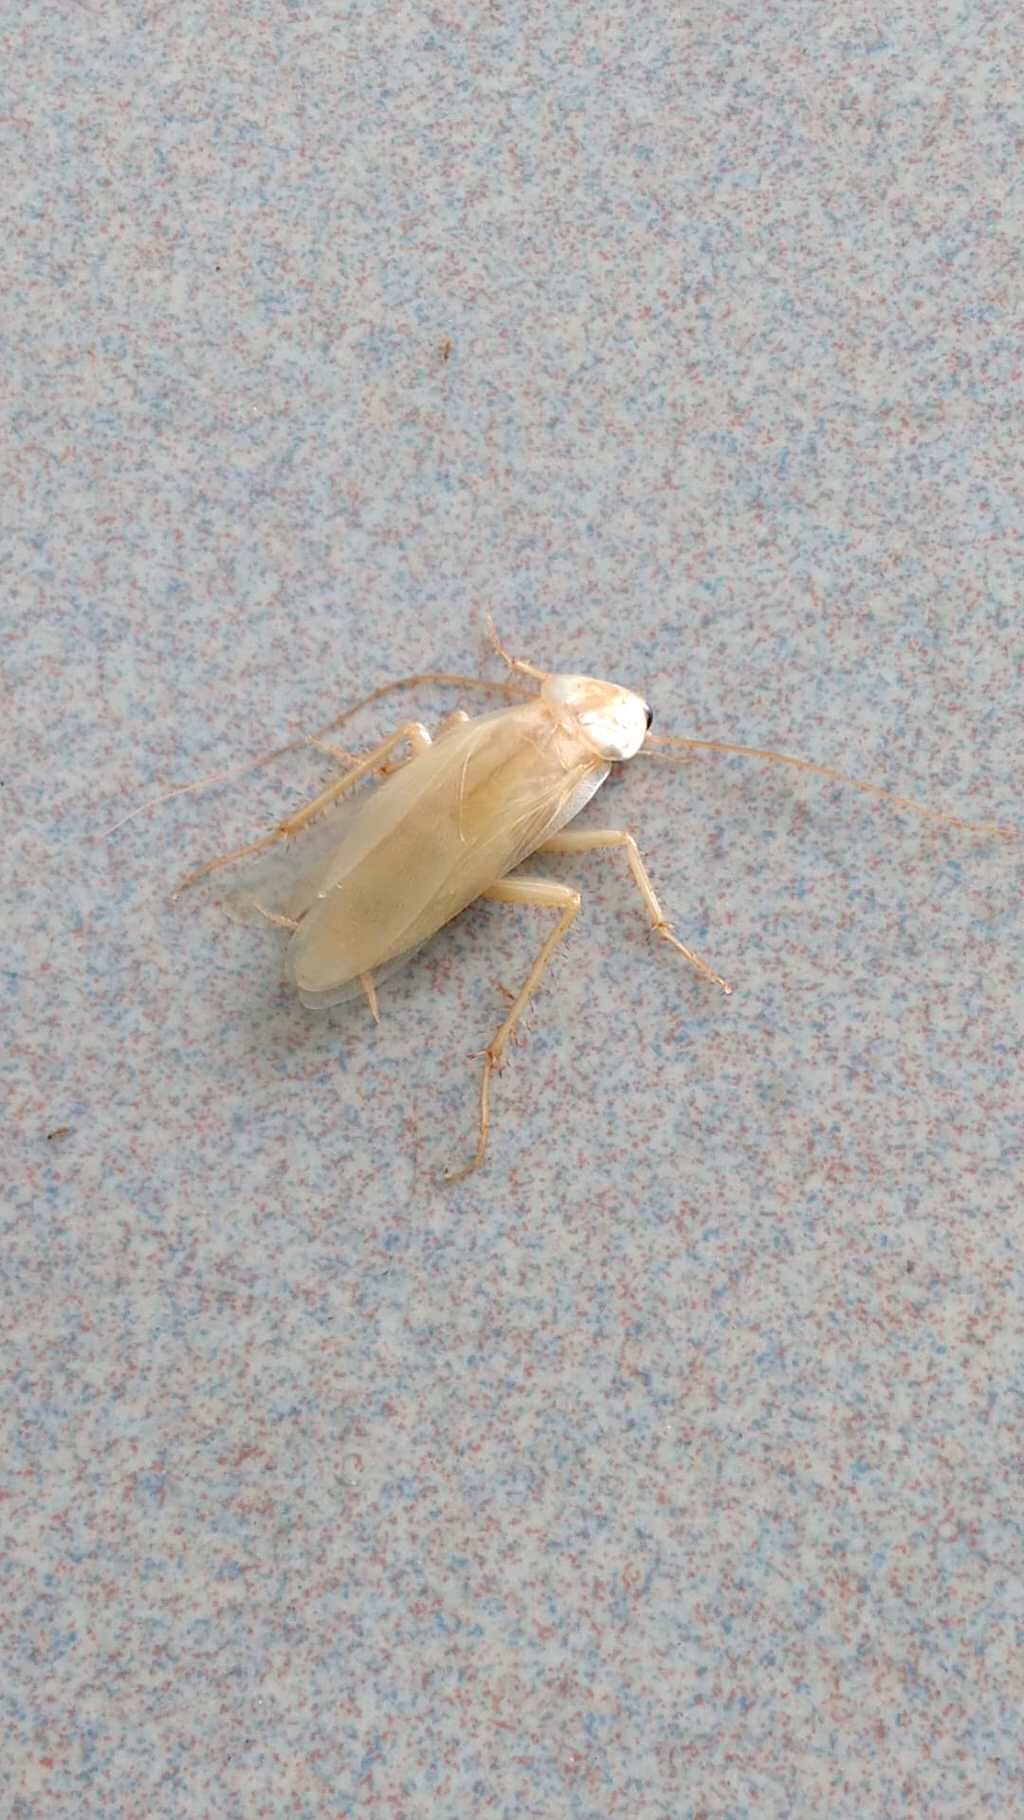 許多網友認為白色的蟑螂比較不讓人感到害怕。(圖/翻攝自爆廢公社公開版)